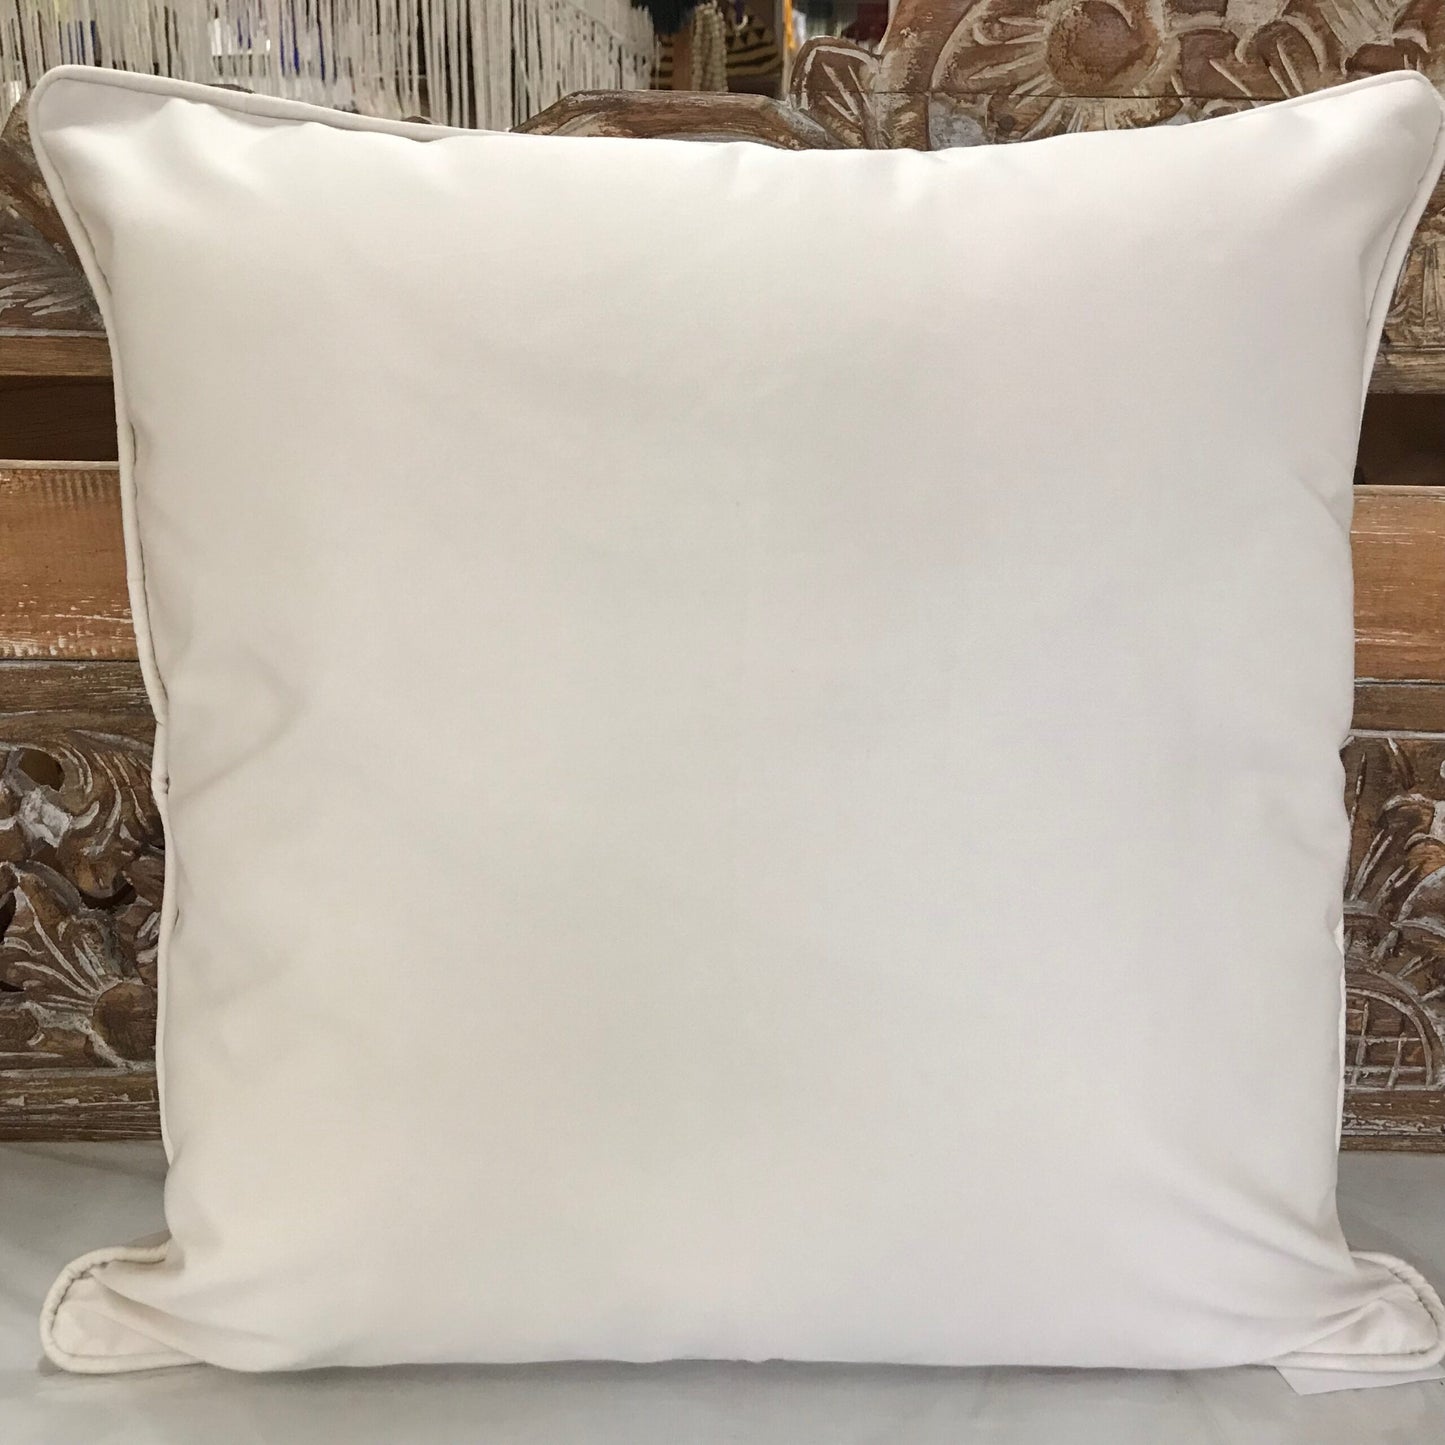 Cotton Drill Cushion Cover 60cm x 60cm